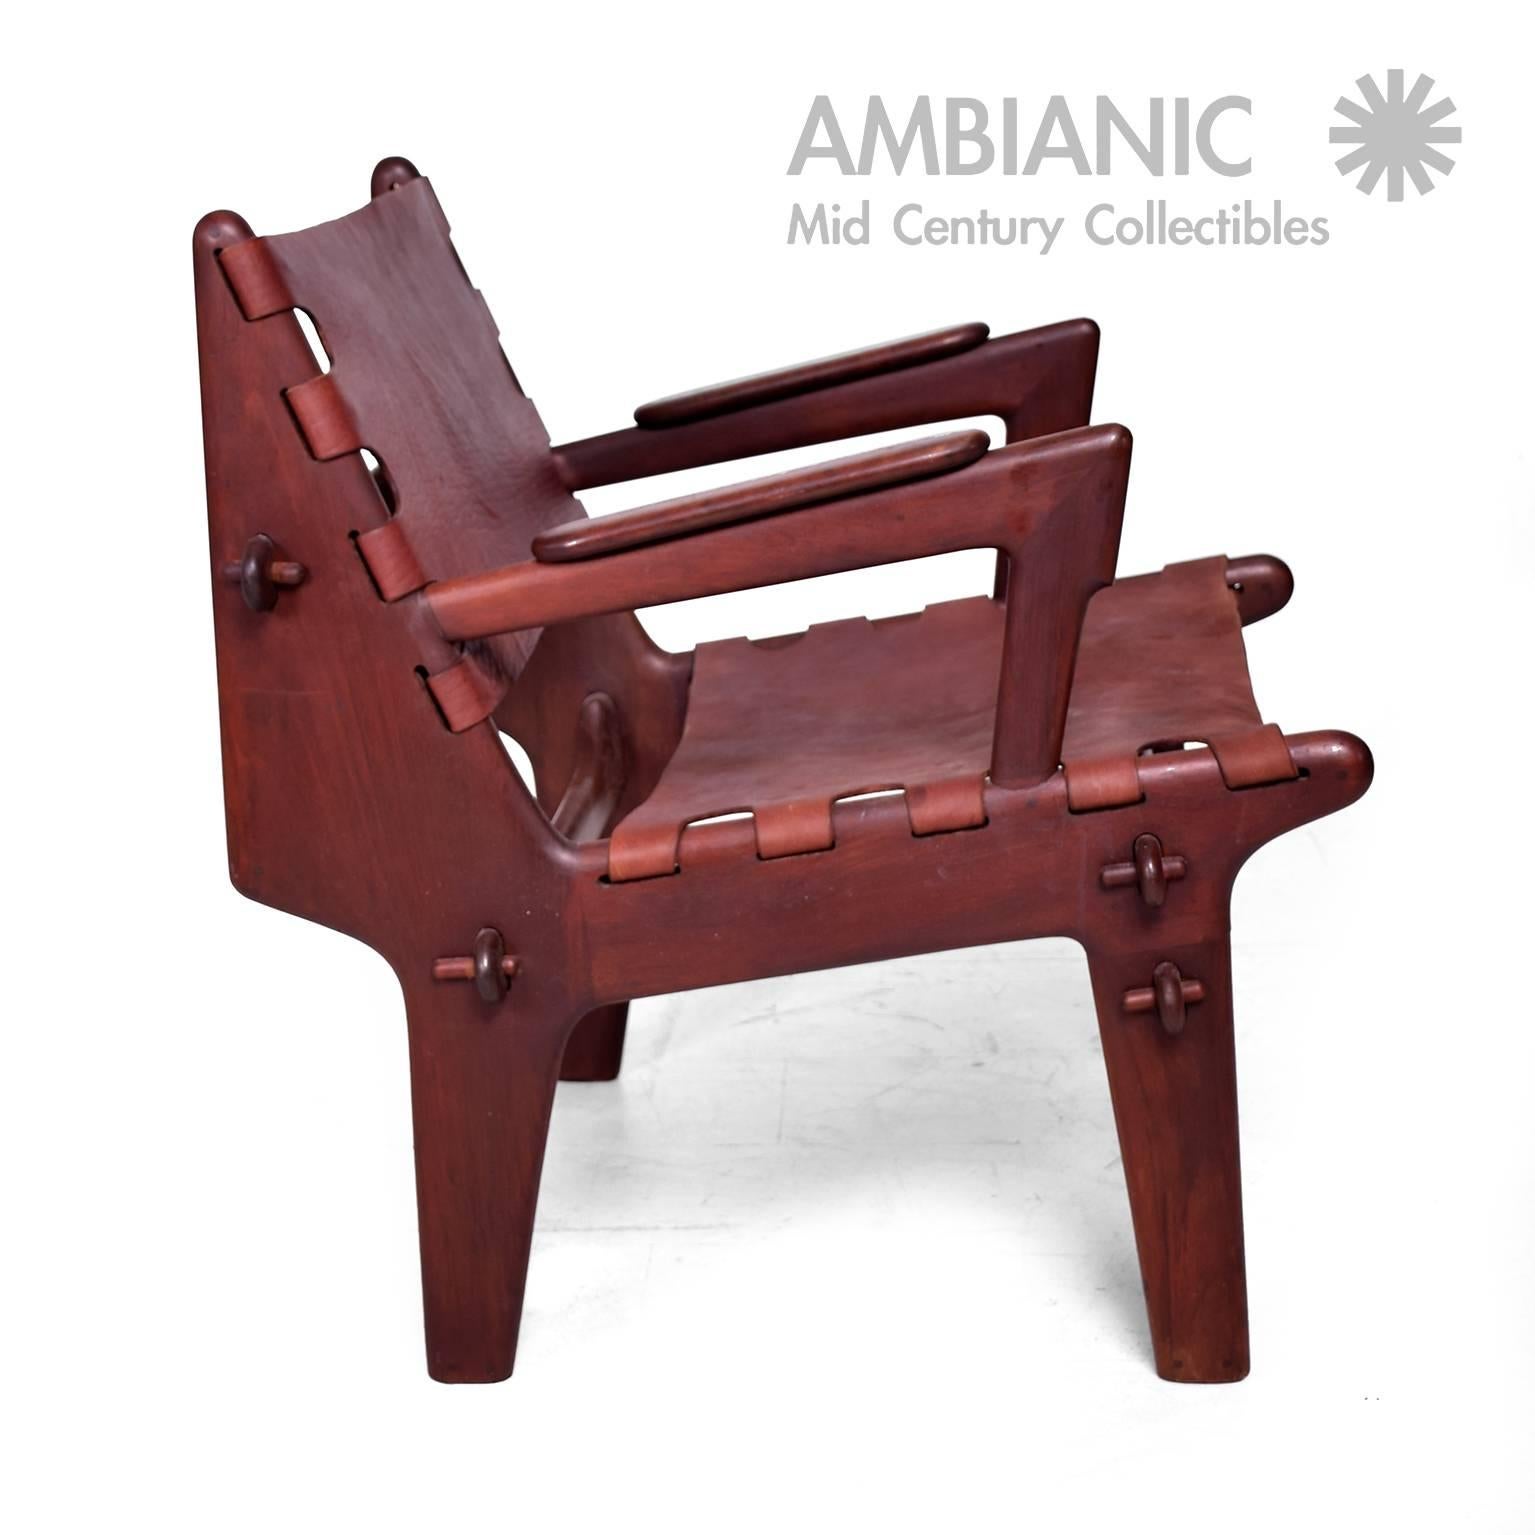 Mid-20th Century Mid Century Modern Pair of Safari Chairs by Angel Pazmino